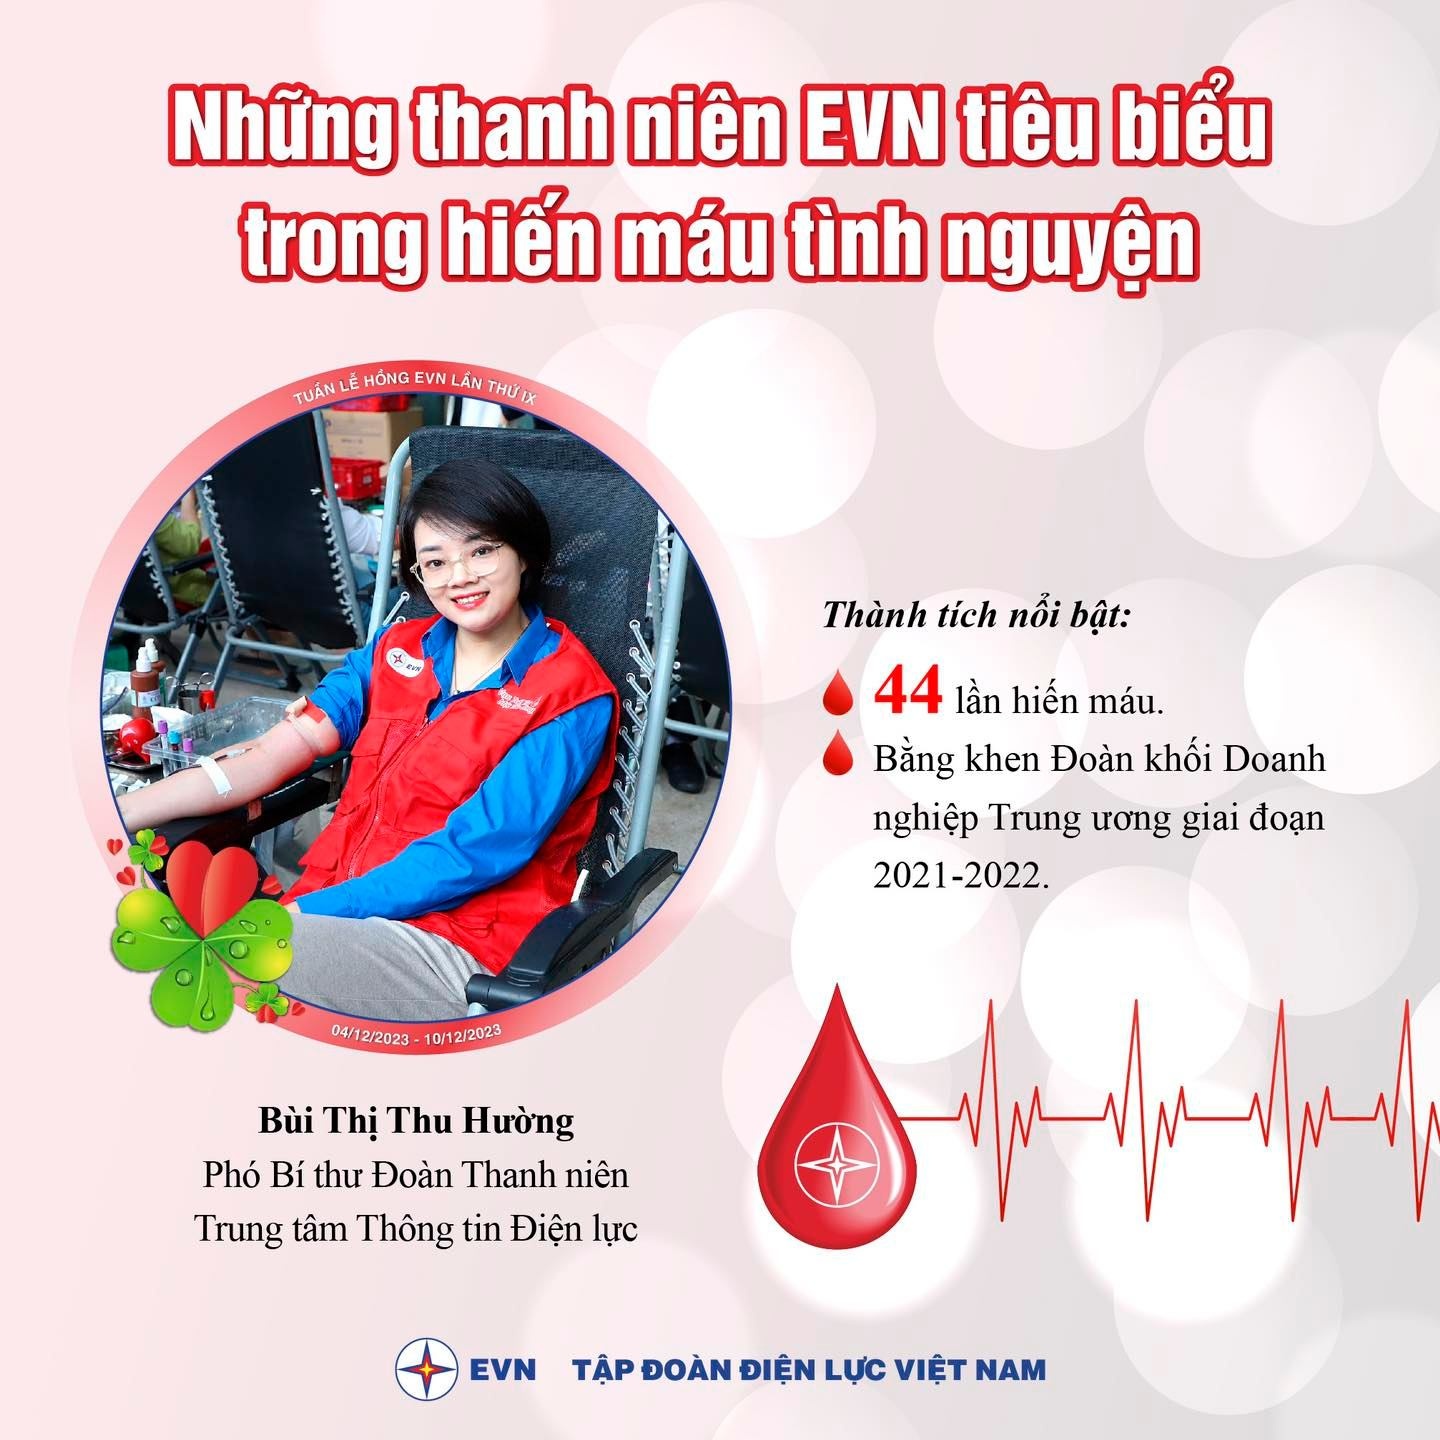 ĐVTN EVN tham gia hiến máu tình nguyện